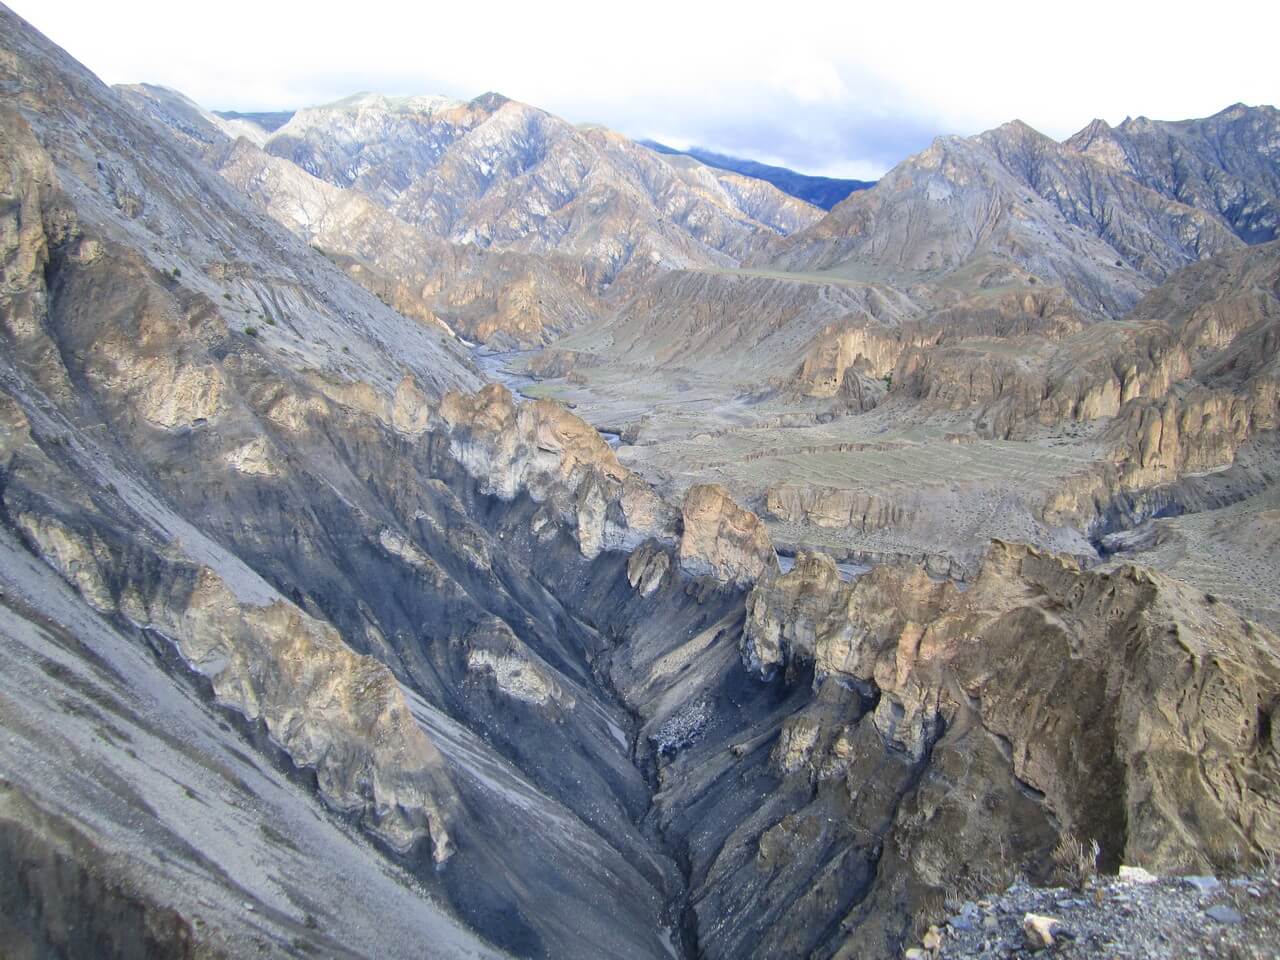 Kali Gandaki gorge